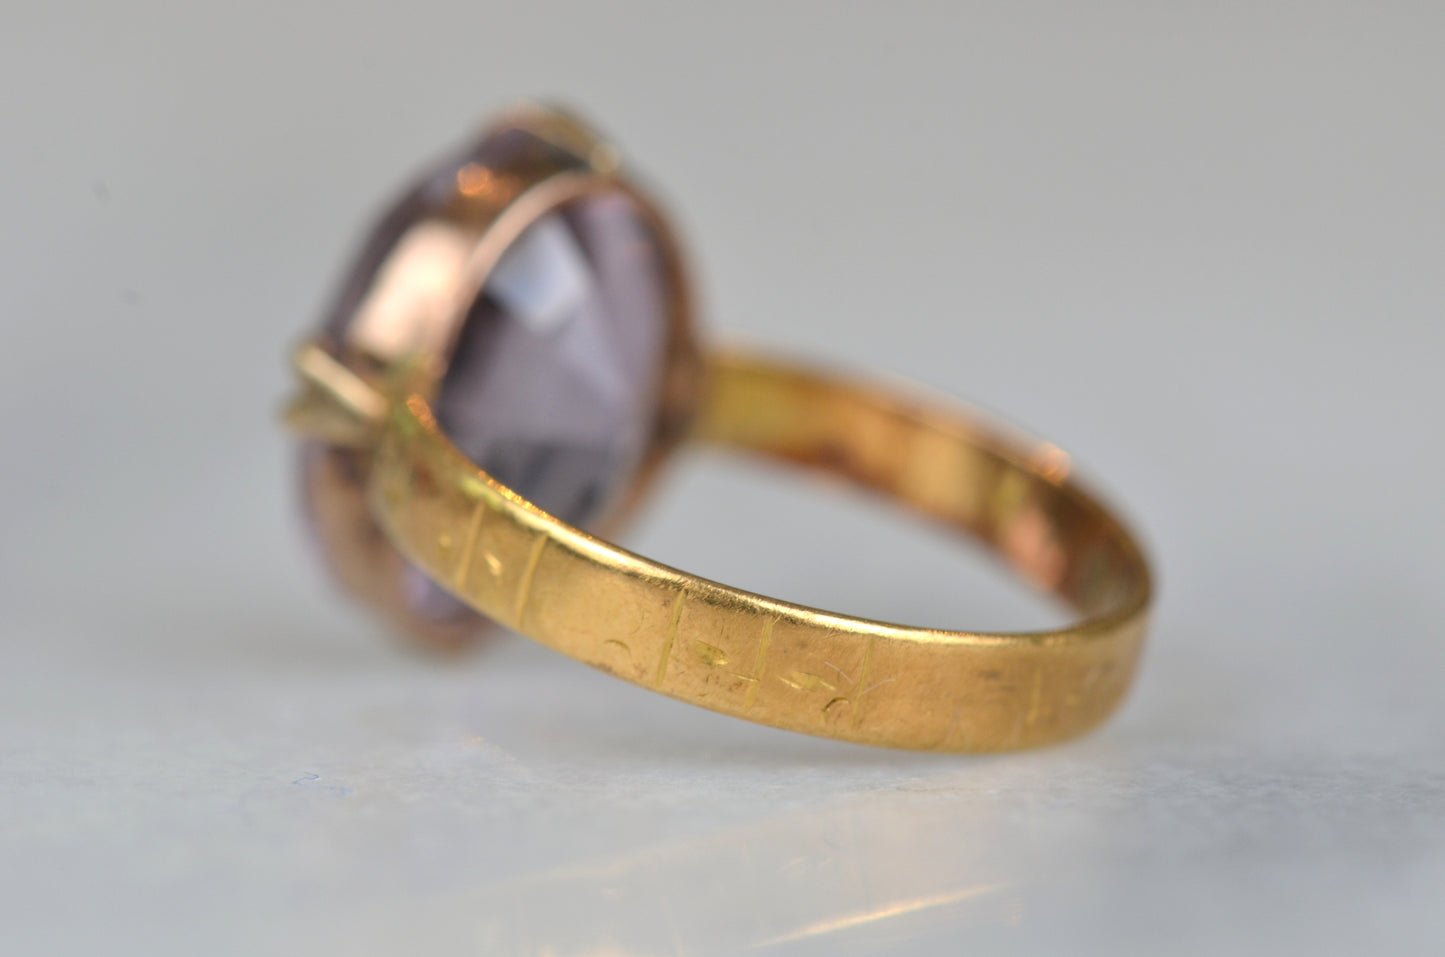 Rustic Vintage Amethyst Ring